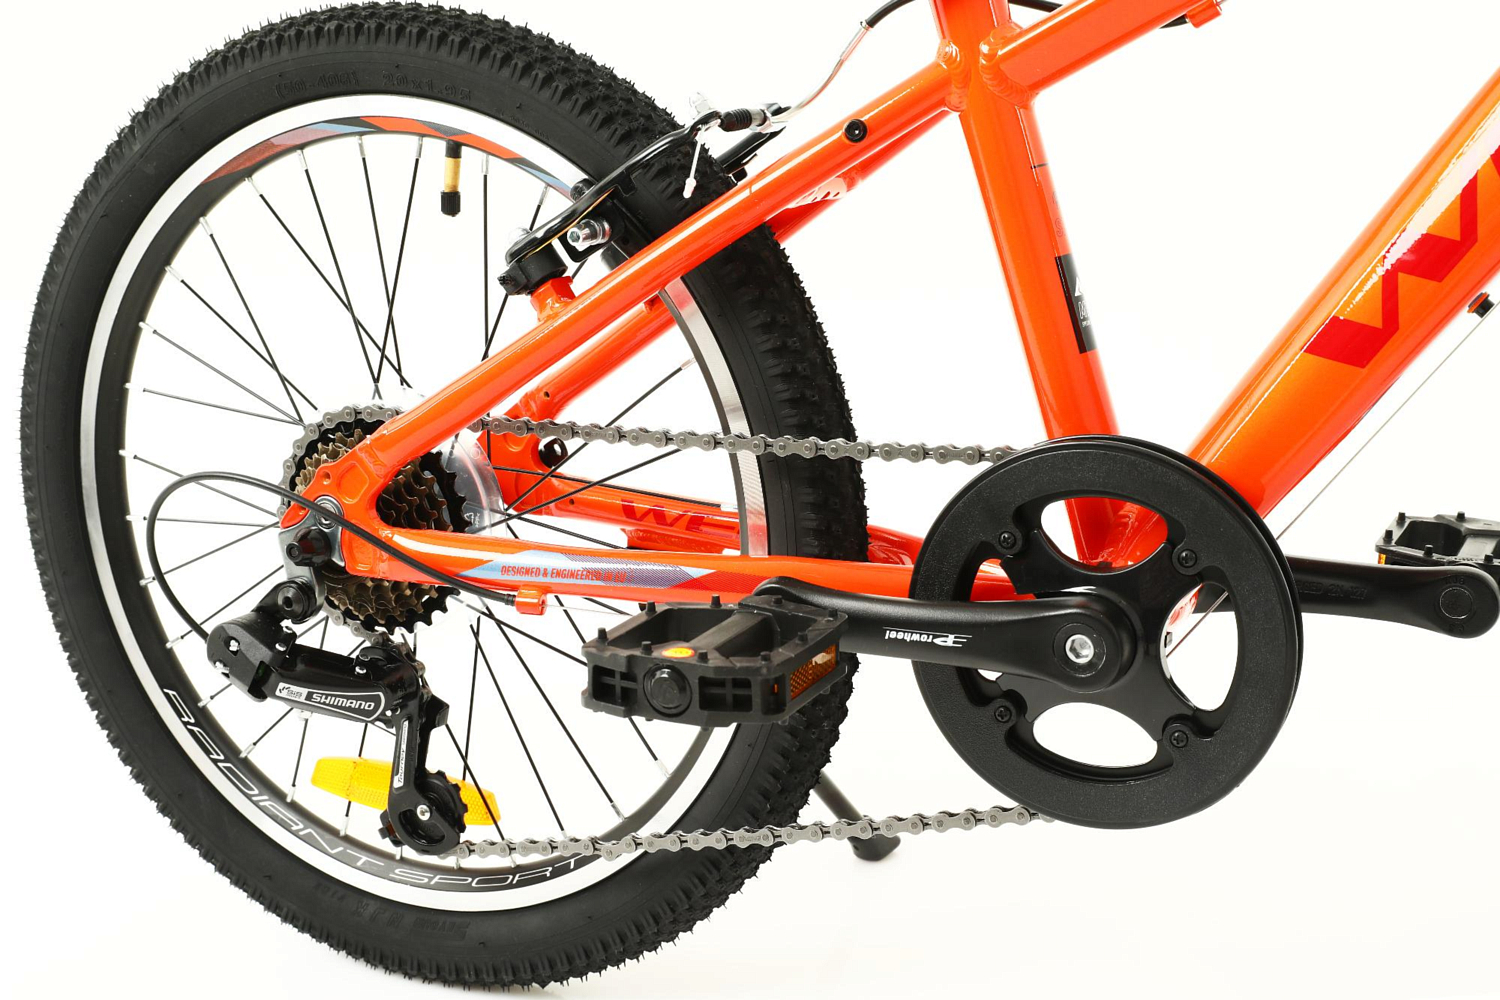 Велосипед Welt Peak 20 2022 Orange